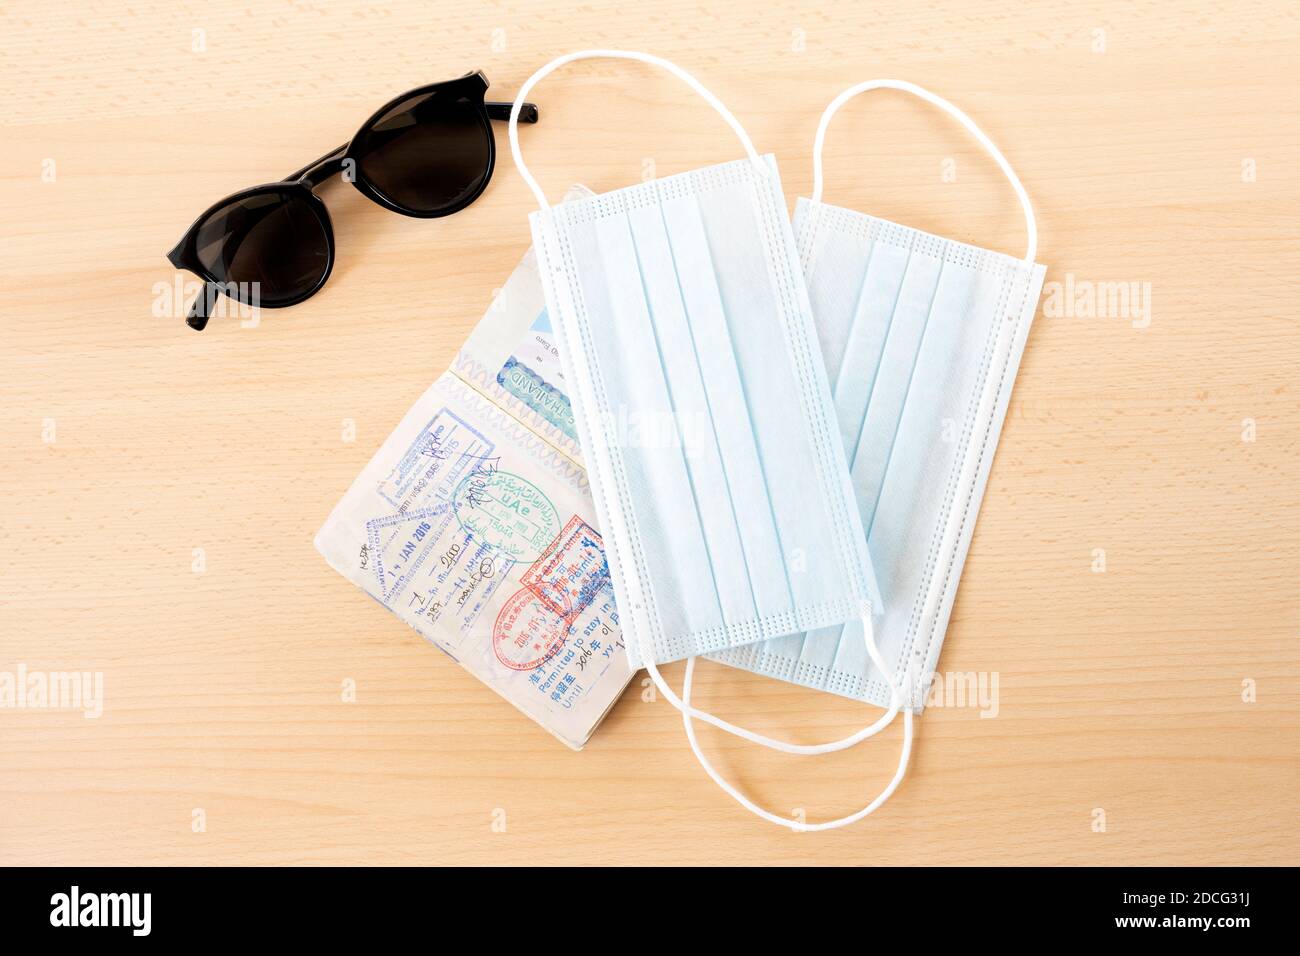 Sicheres Reisekonzept, Gesichtsmasken, Reisepass und Sonnenbrille sind auf einem Holztisch angeordnet. Stockfoto